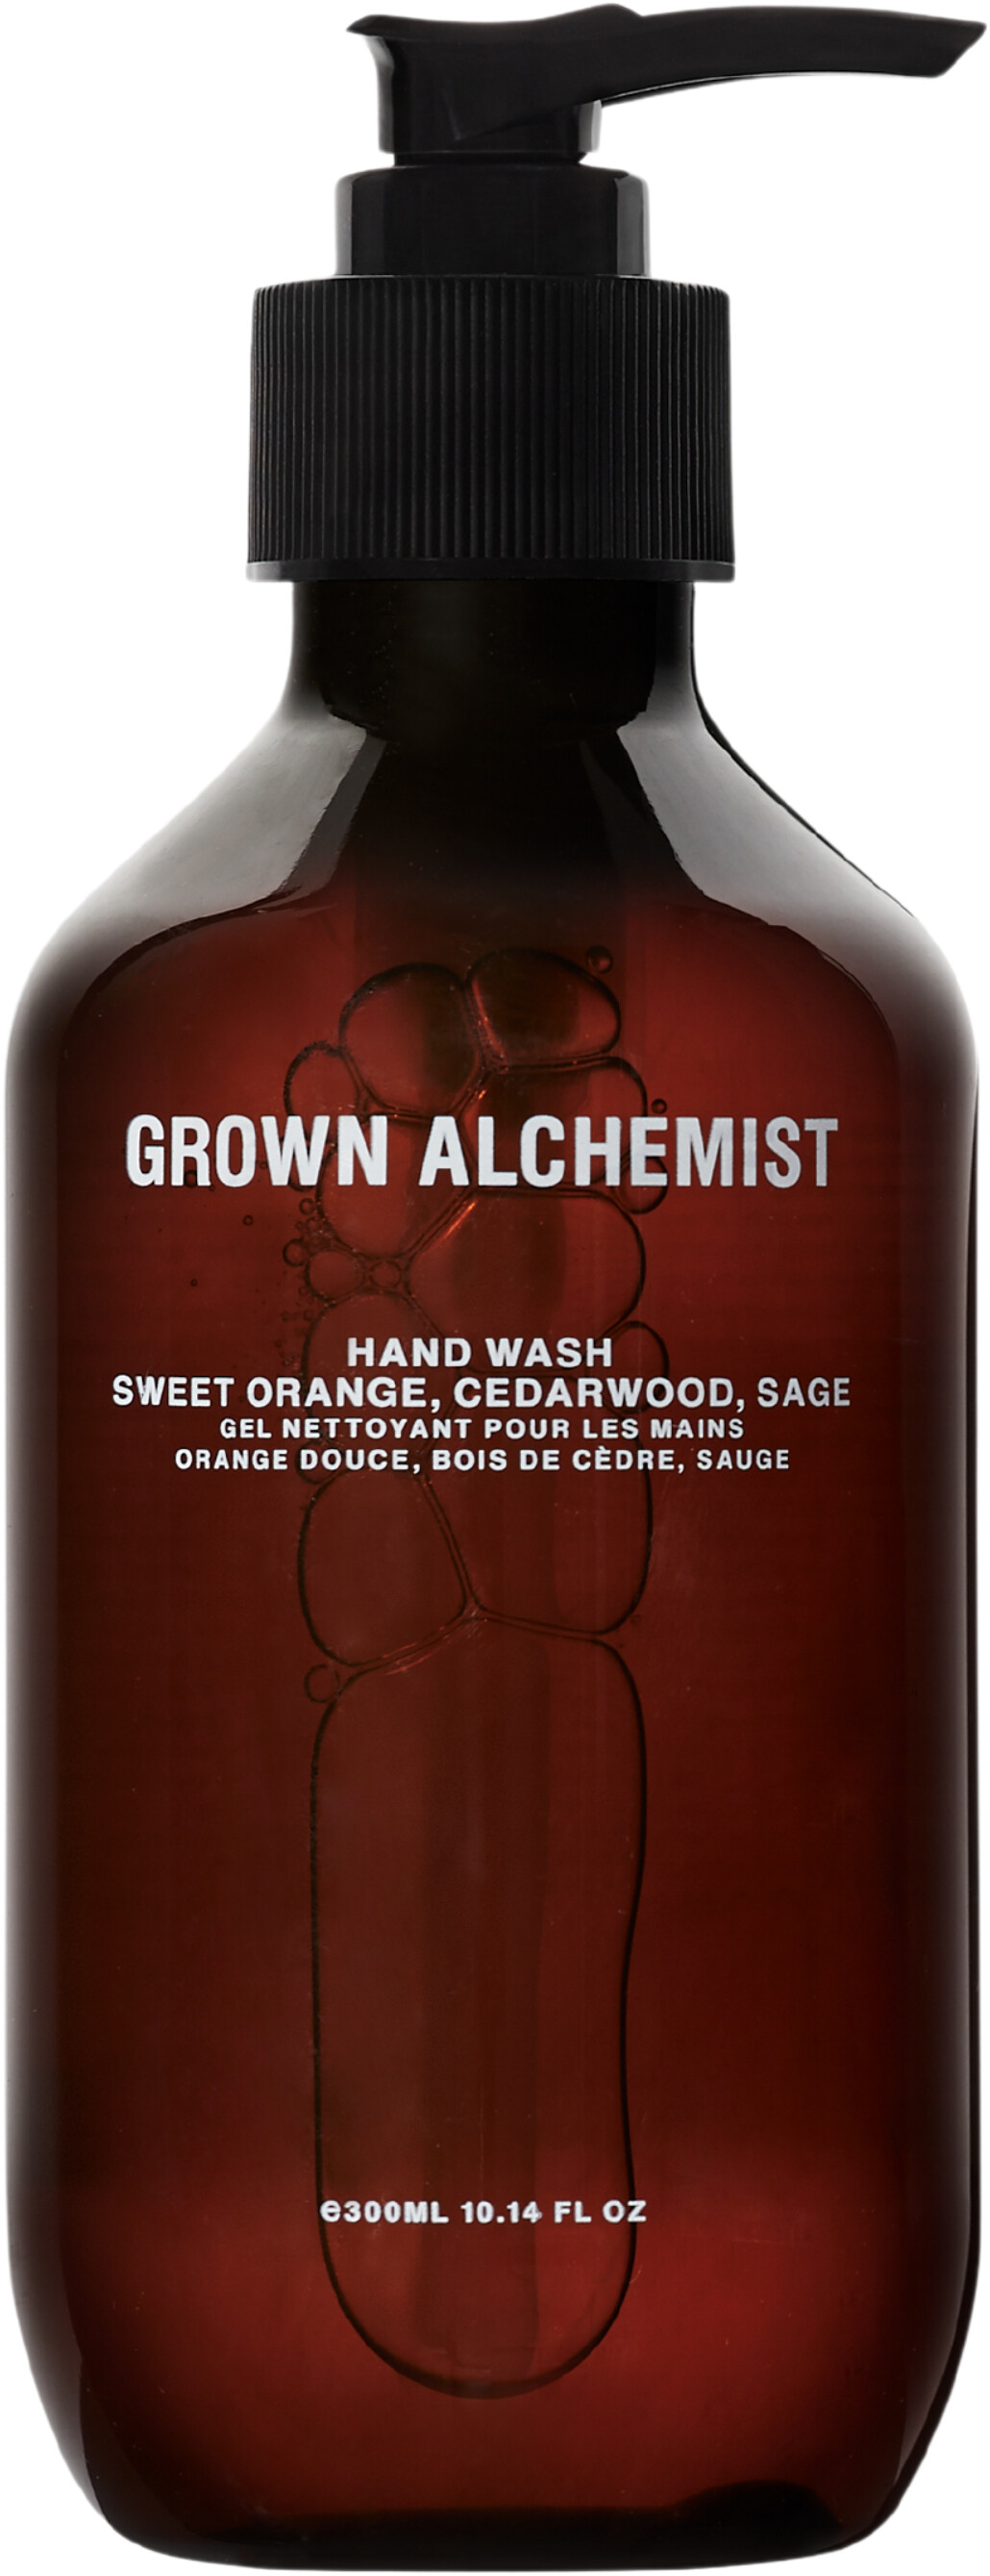 Grown Alchemist Hand Wash - Sweet Orange, Cedarwood & Sage 300ml